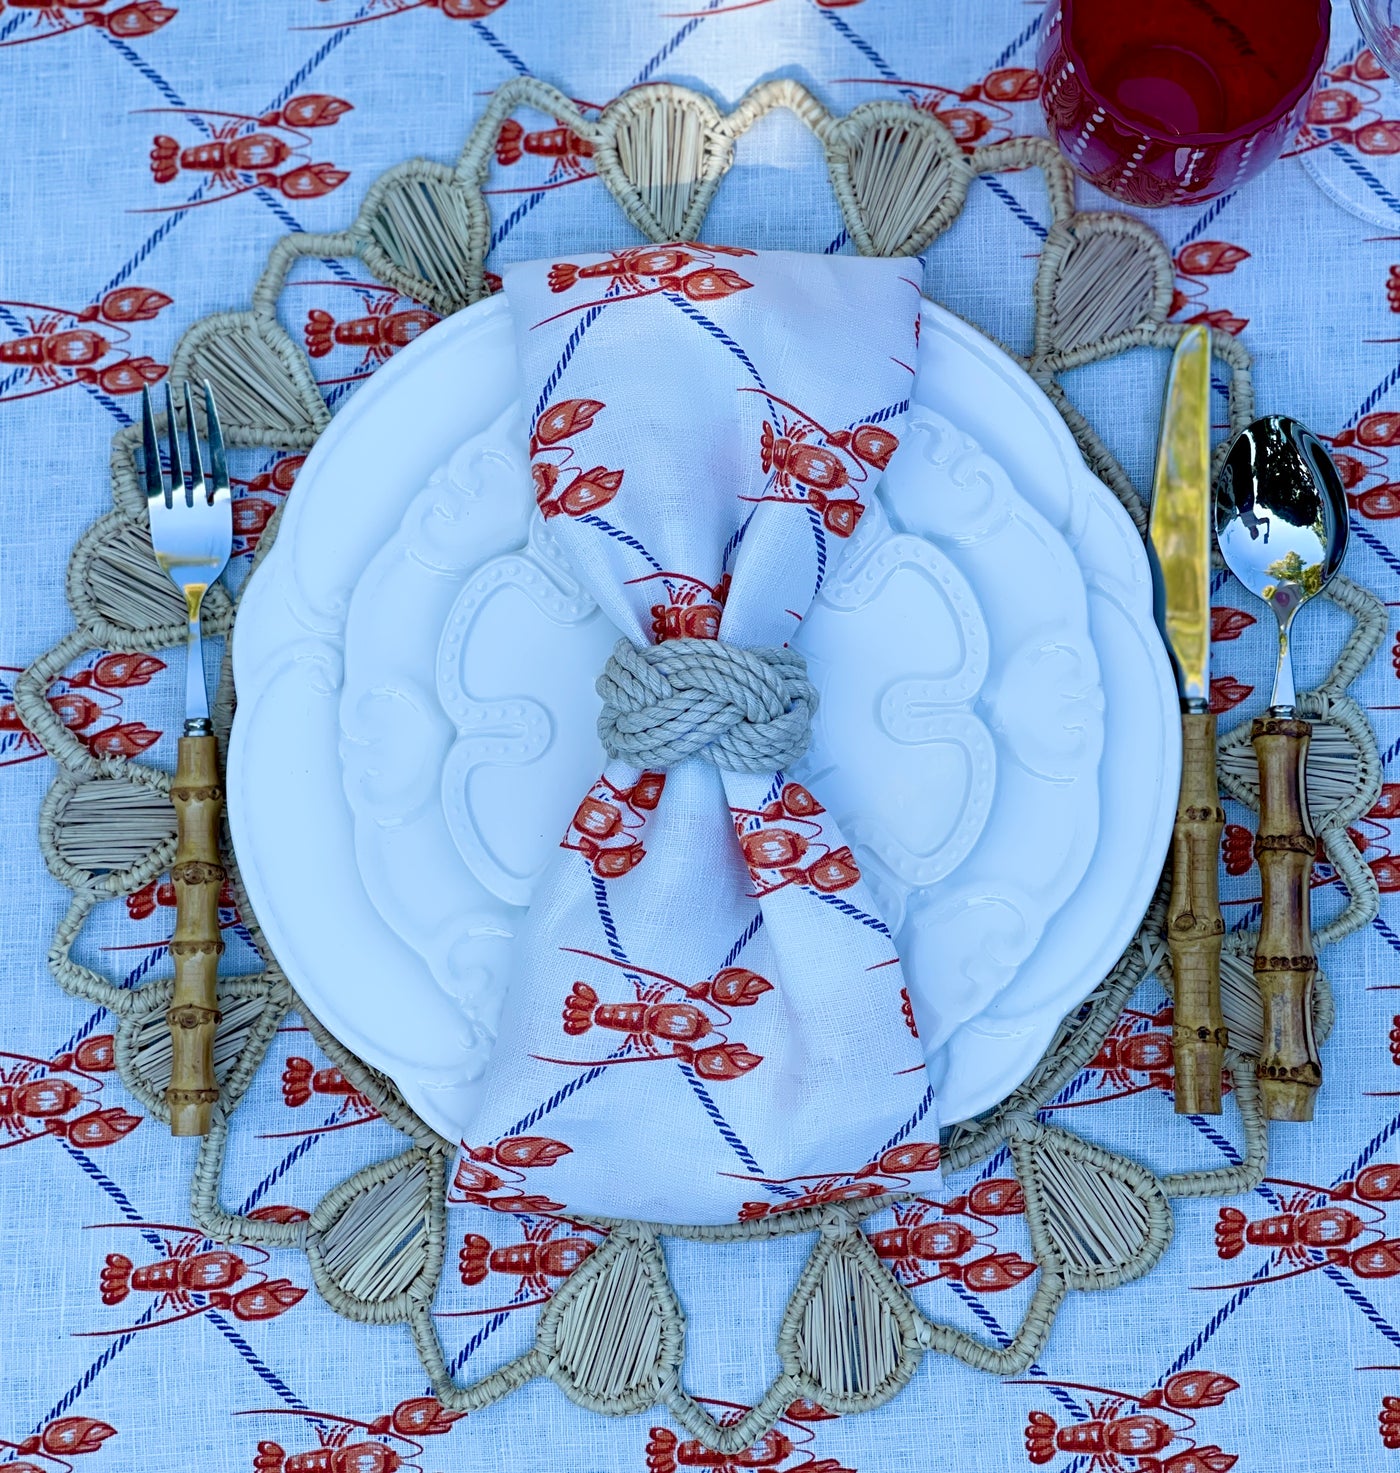 100% Linen Tablecloth - "Ahoy"